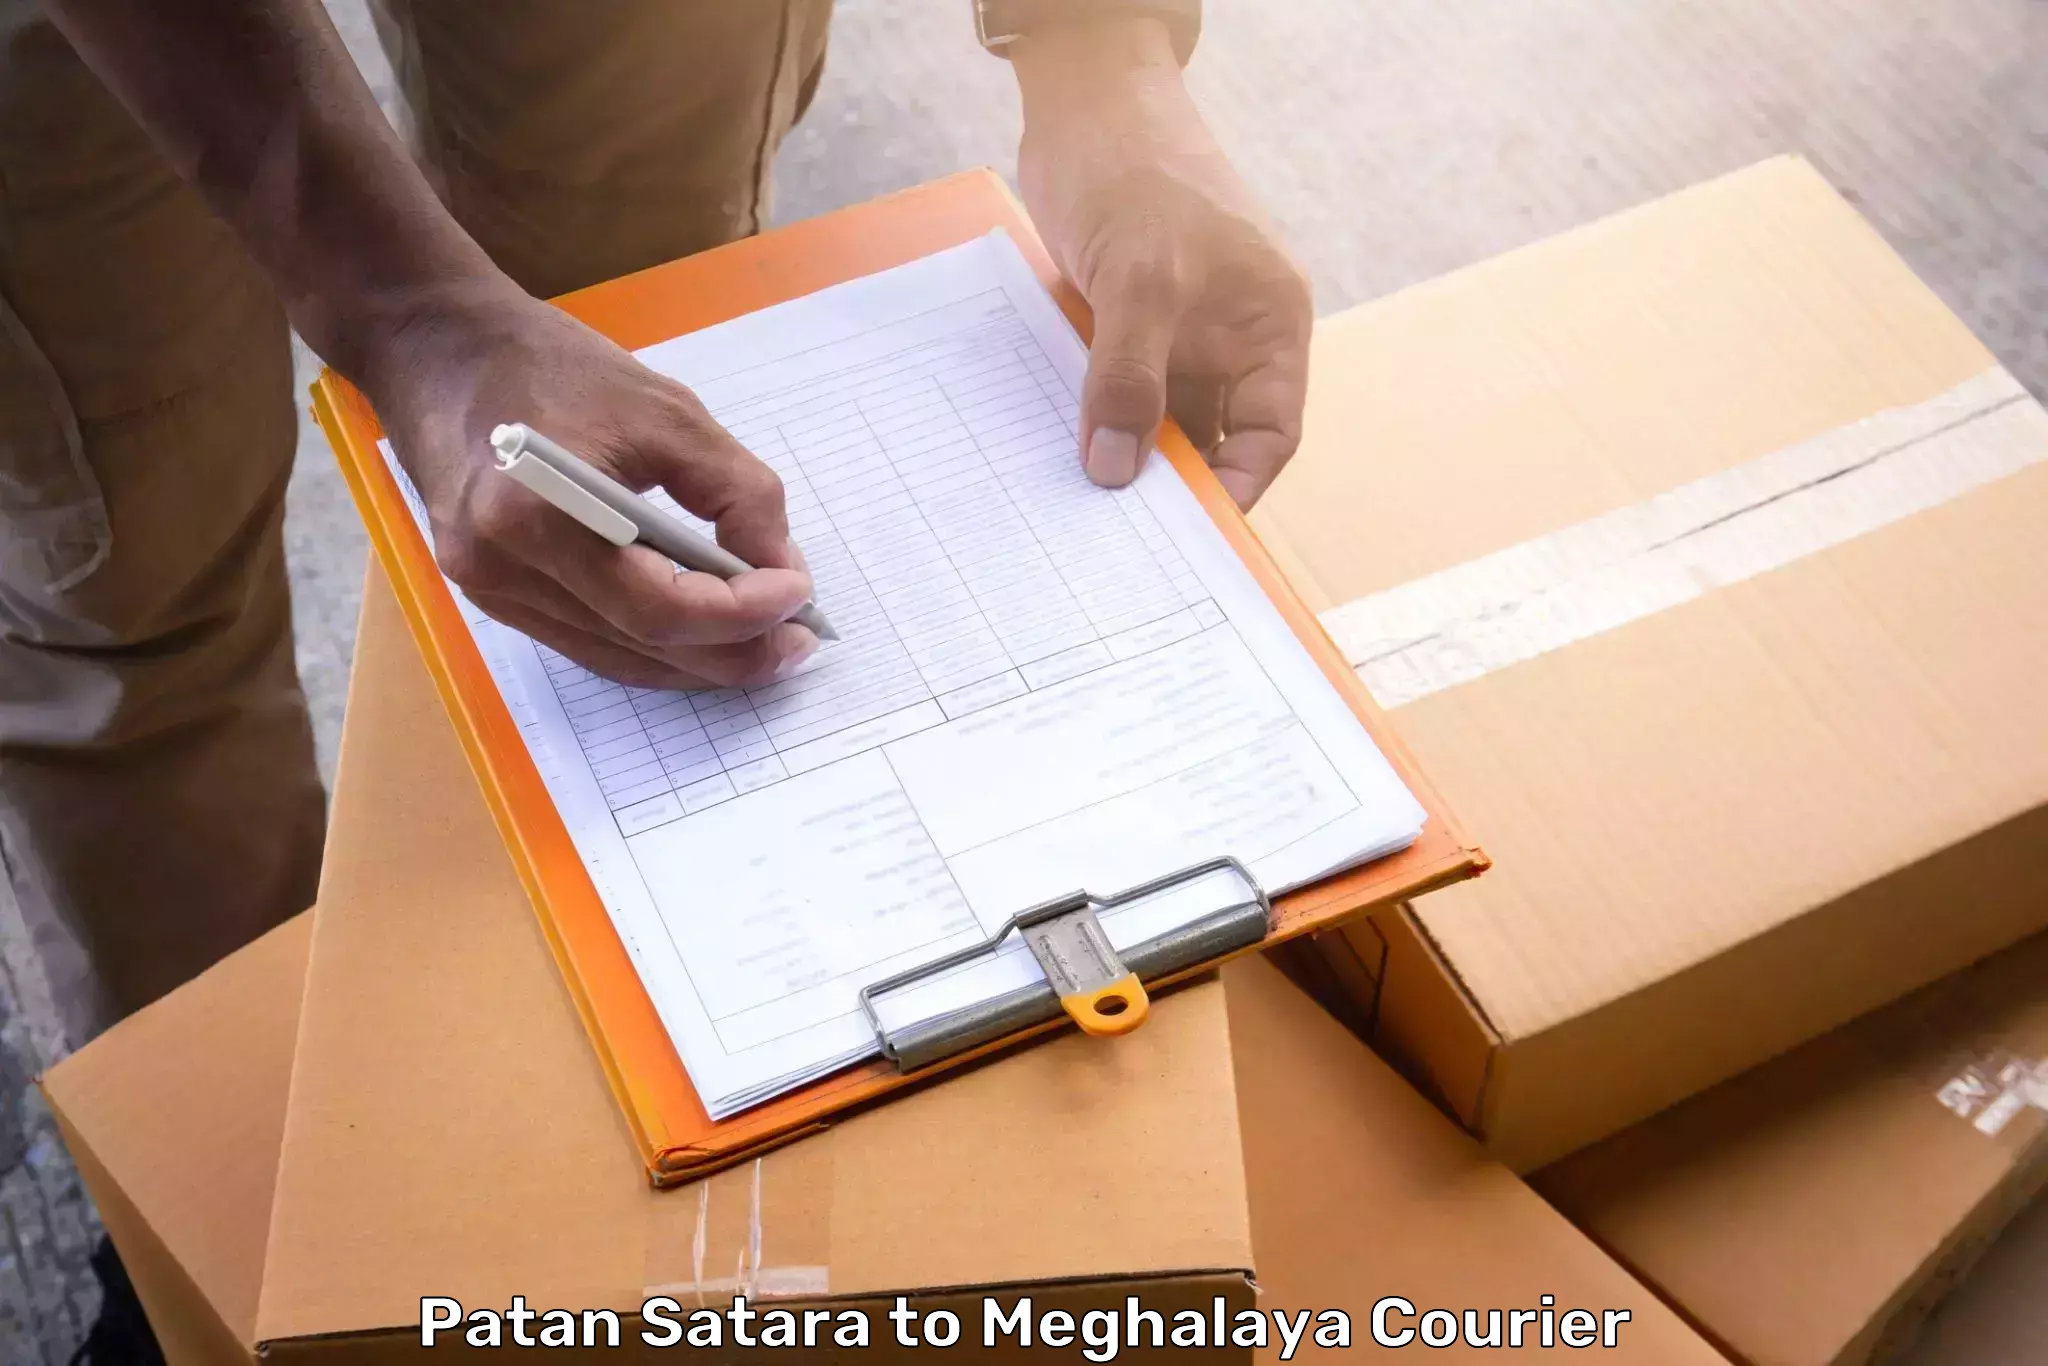 Luggage transfer service Patan Satara to Jowai